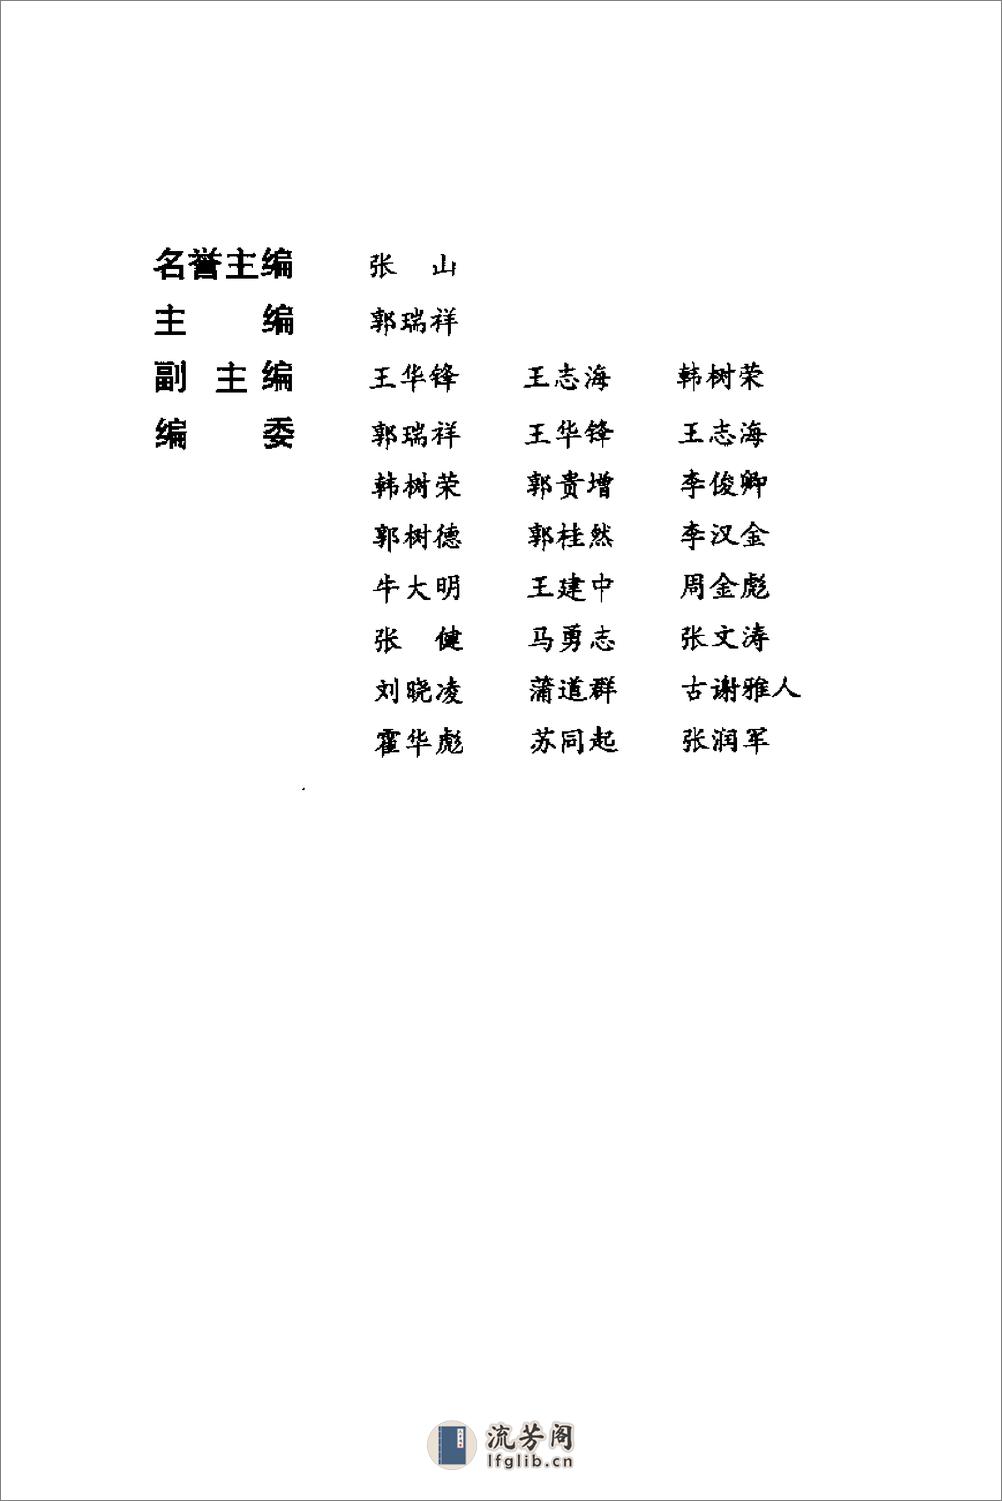 《劈挂拳》中国武术系列规定套路编写组 - 第3页预览图